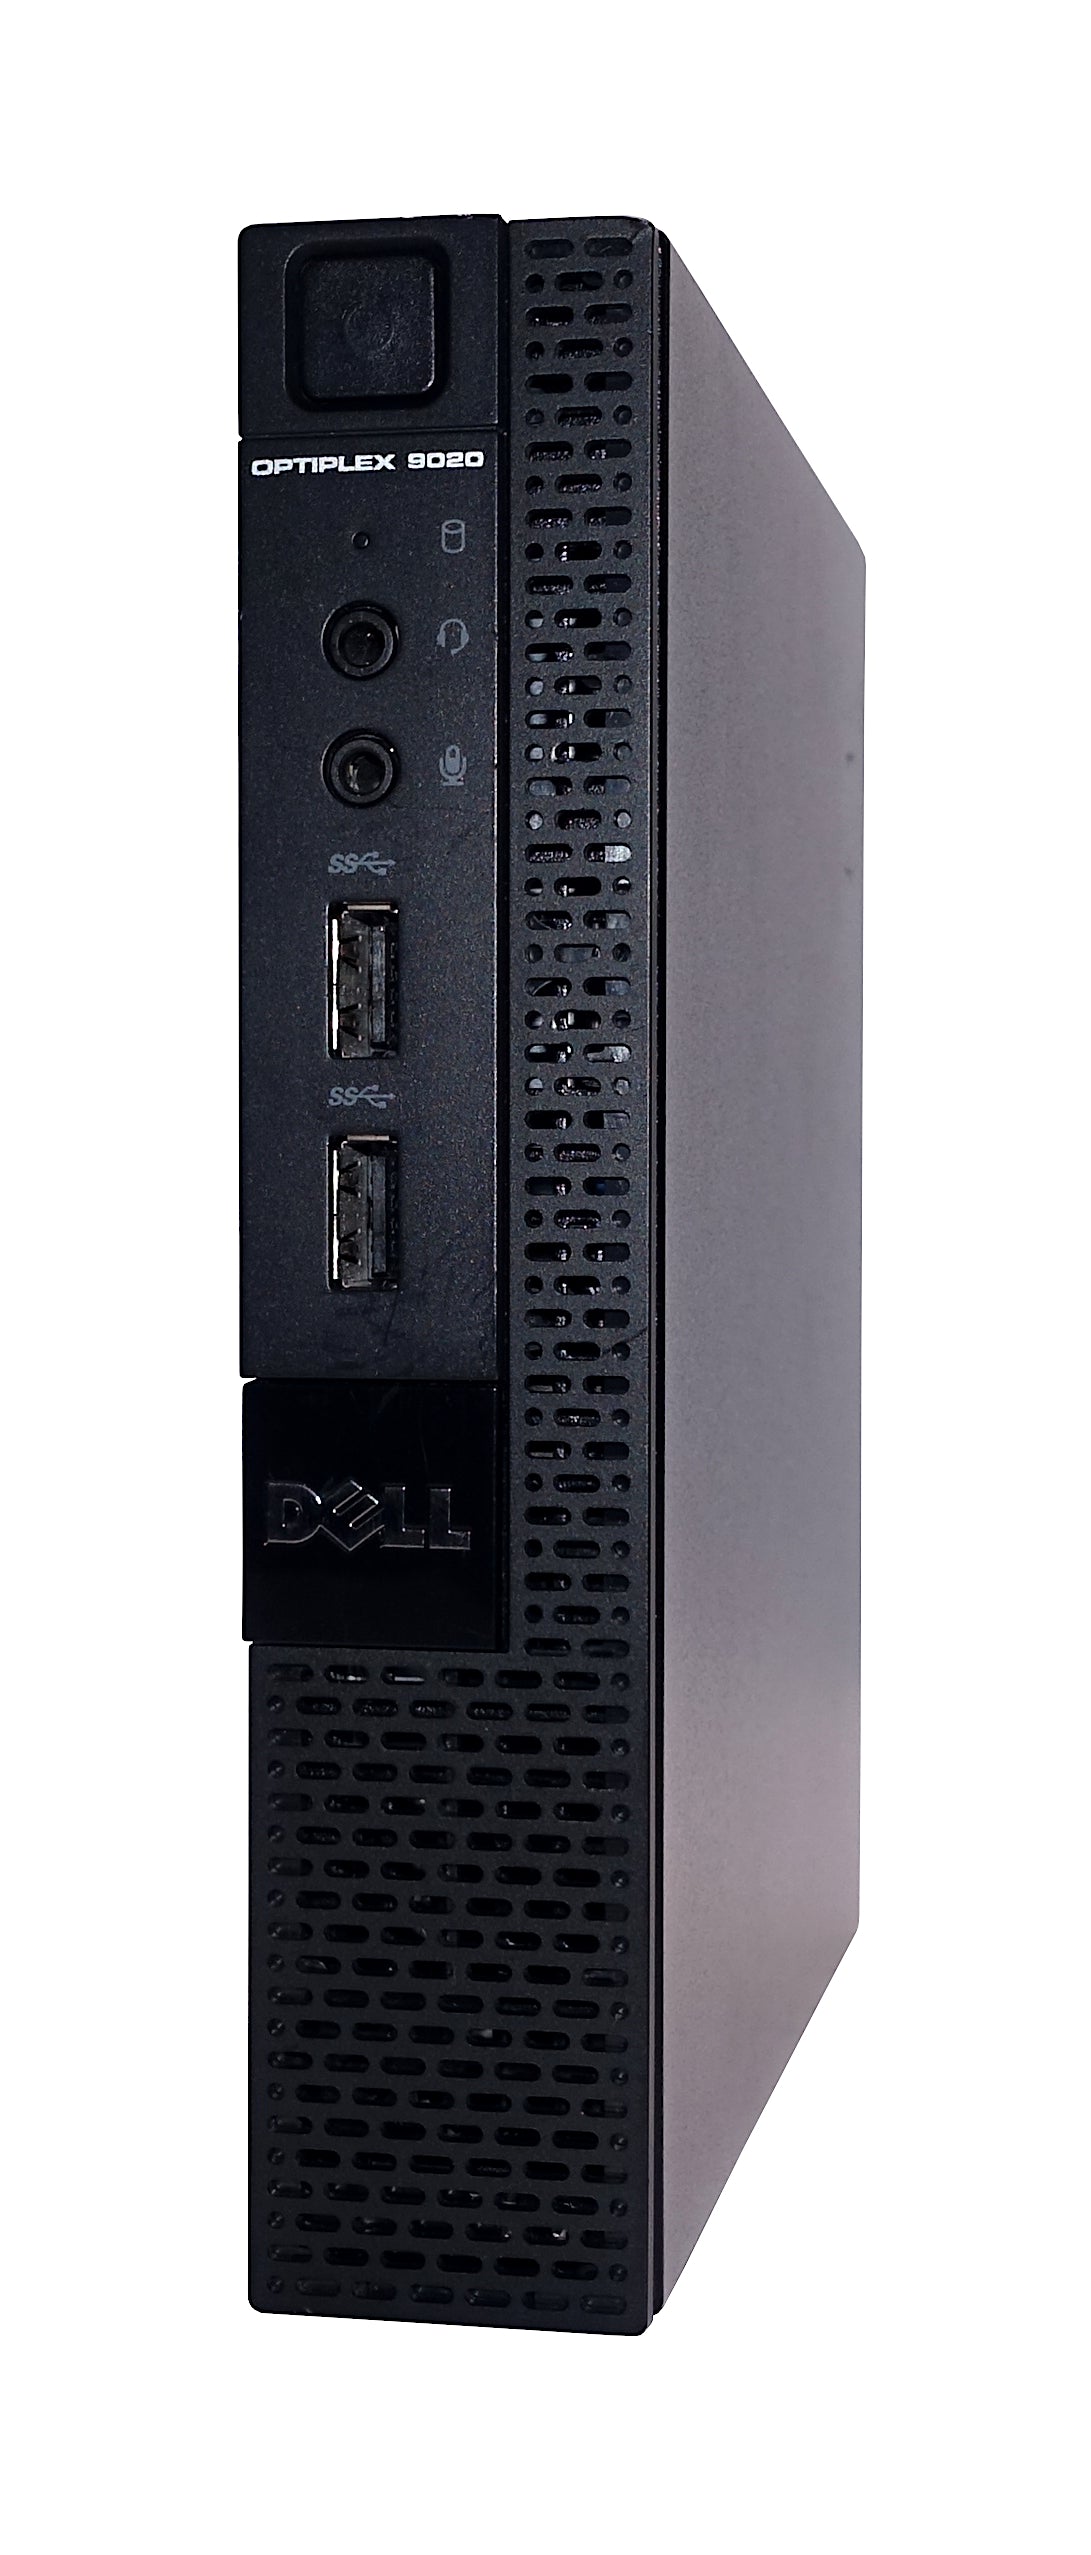 Dell Optiplex 9020 Micro PC, Core i5 4th Gen, 8GB RAM, 128GB SSD